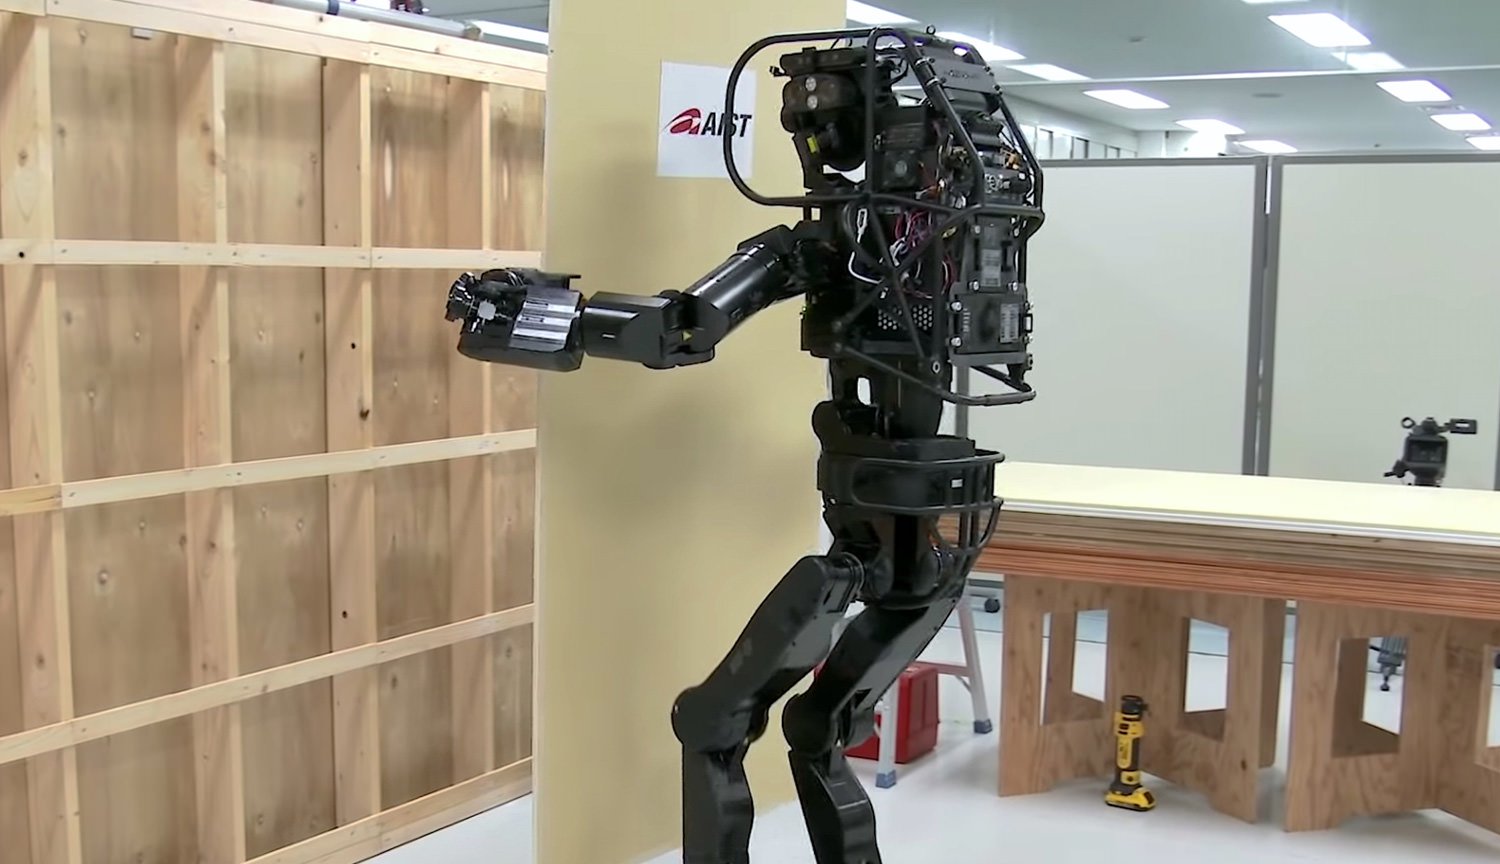 Vídeo: двуногий robô construtor de HRP-5P sozinho prende a placa na parede